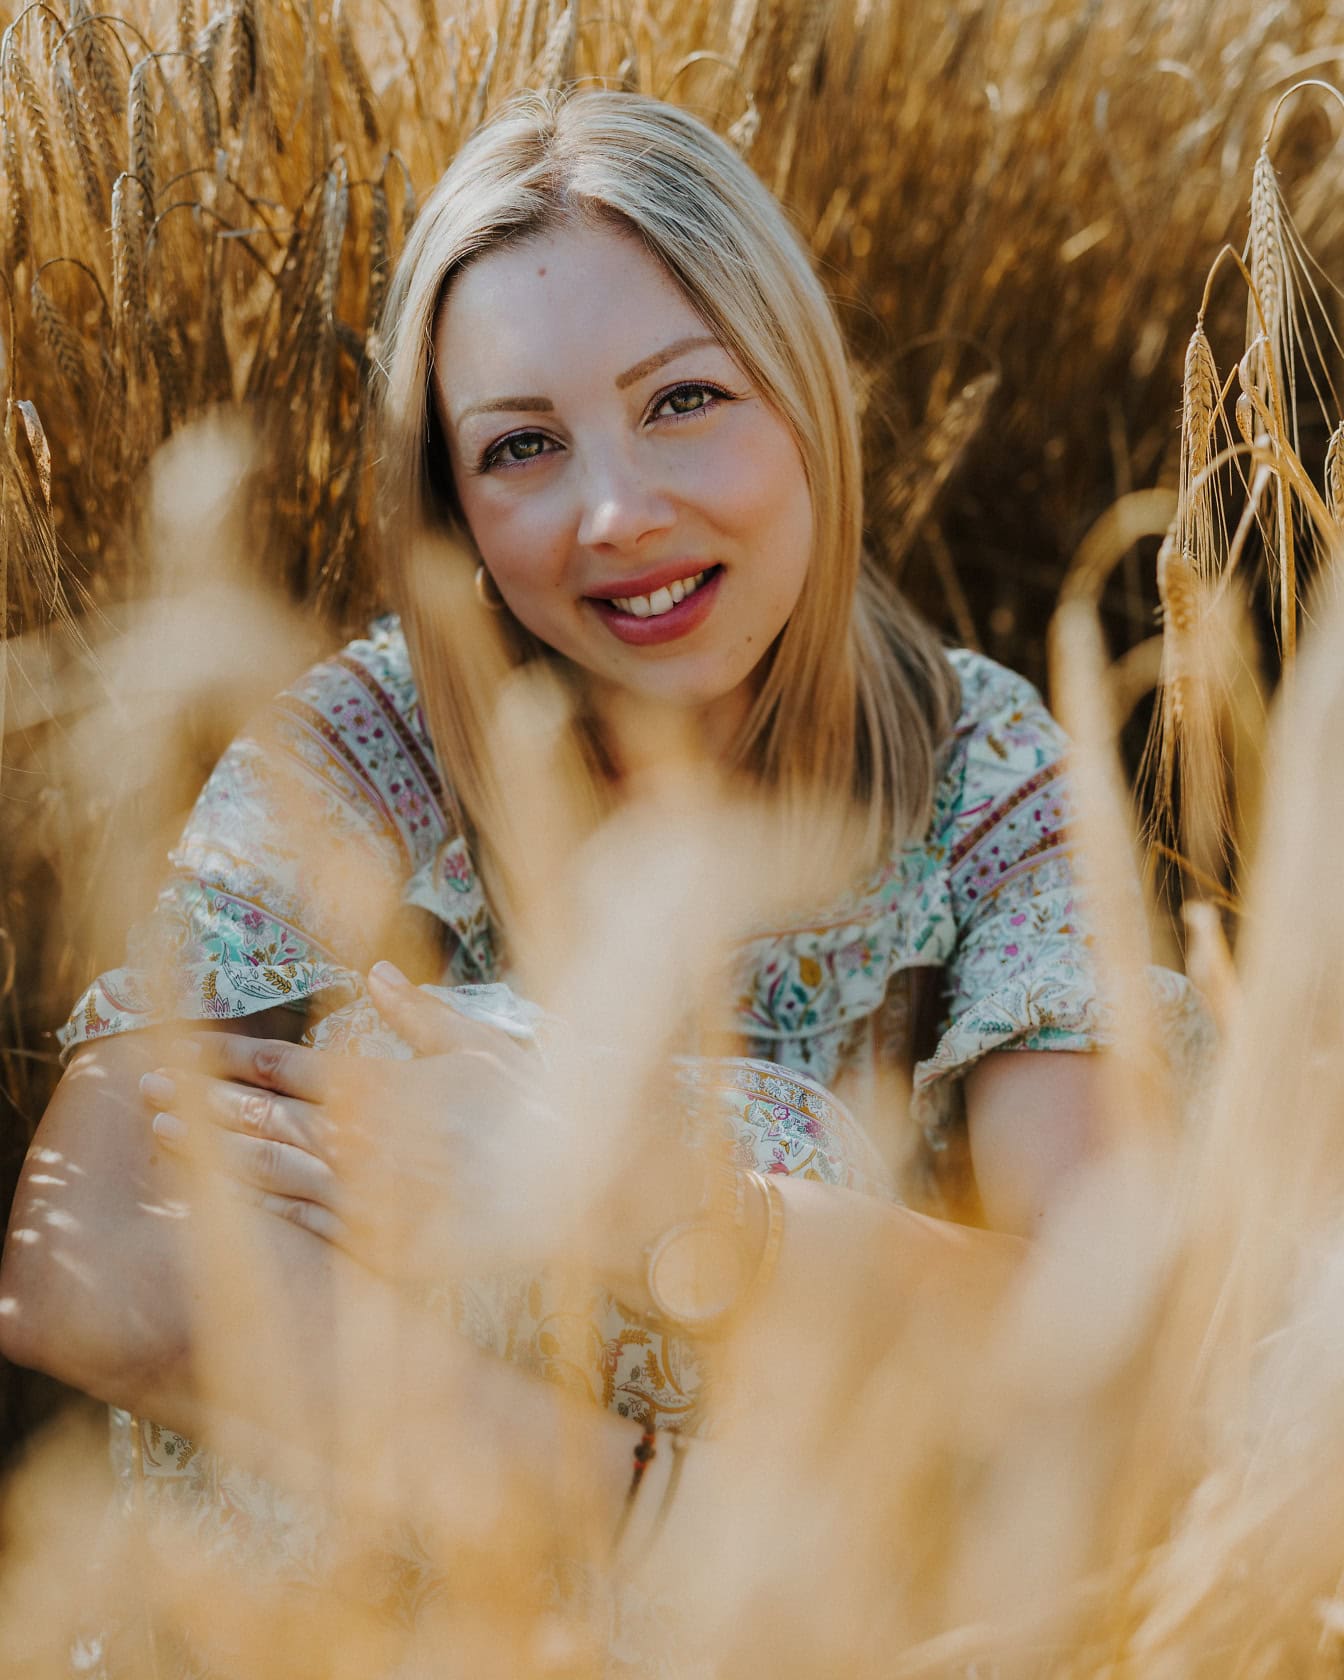 Умопомрачительная красавица-блондинка, сидящая и улыбающаяся на пшеничном поле